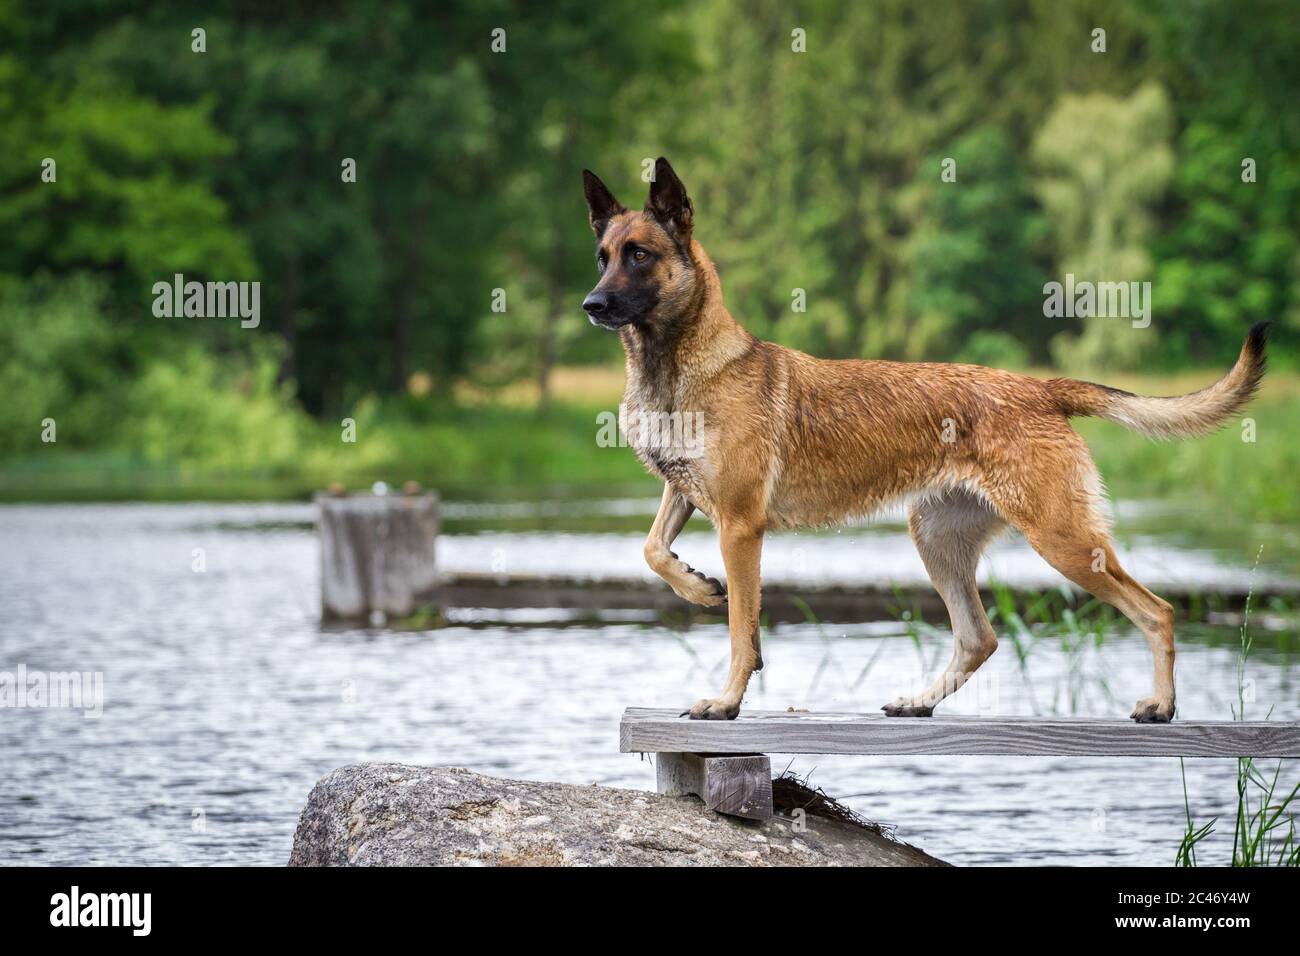 Malinois atlético (perro pastor belga) parado en un embarcadero Foto de stock